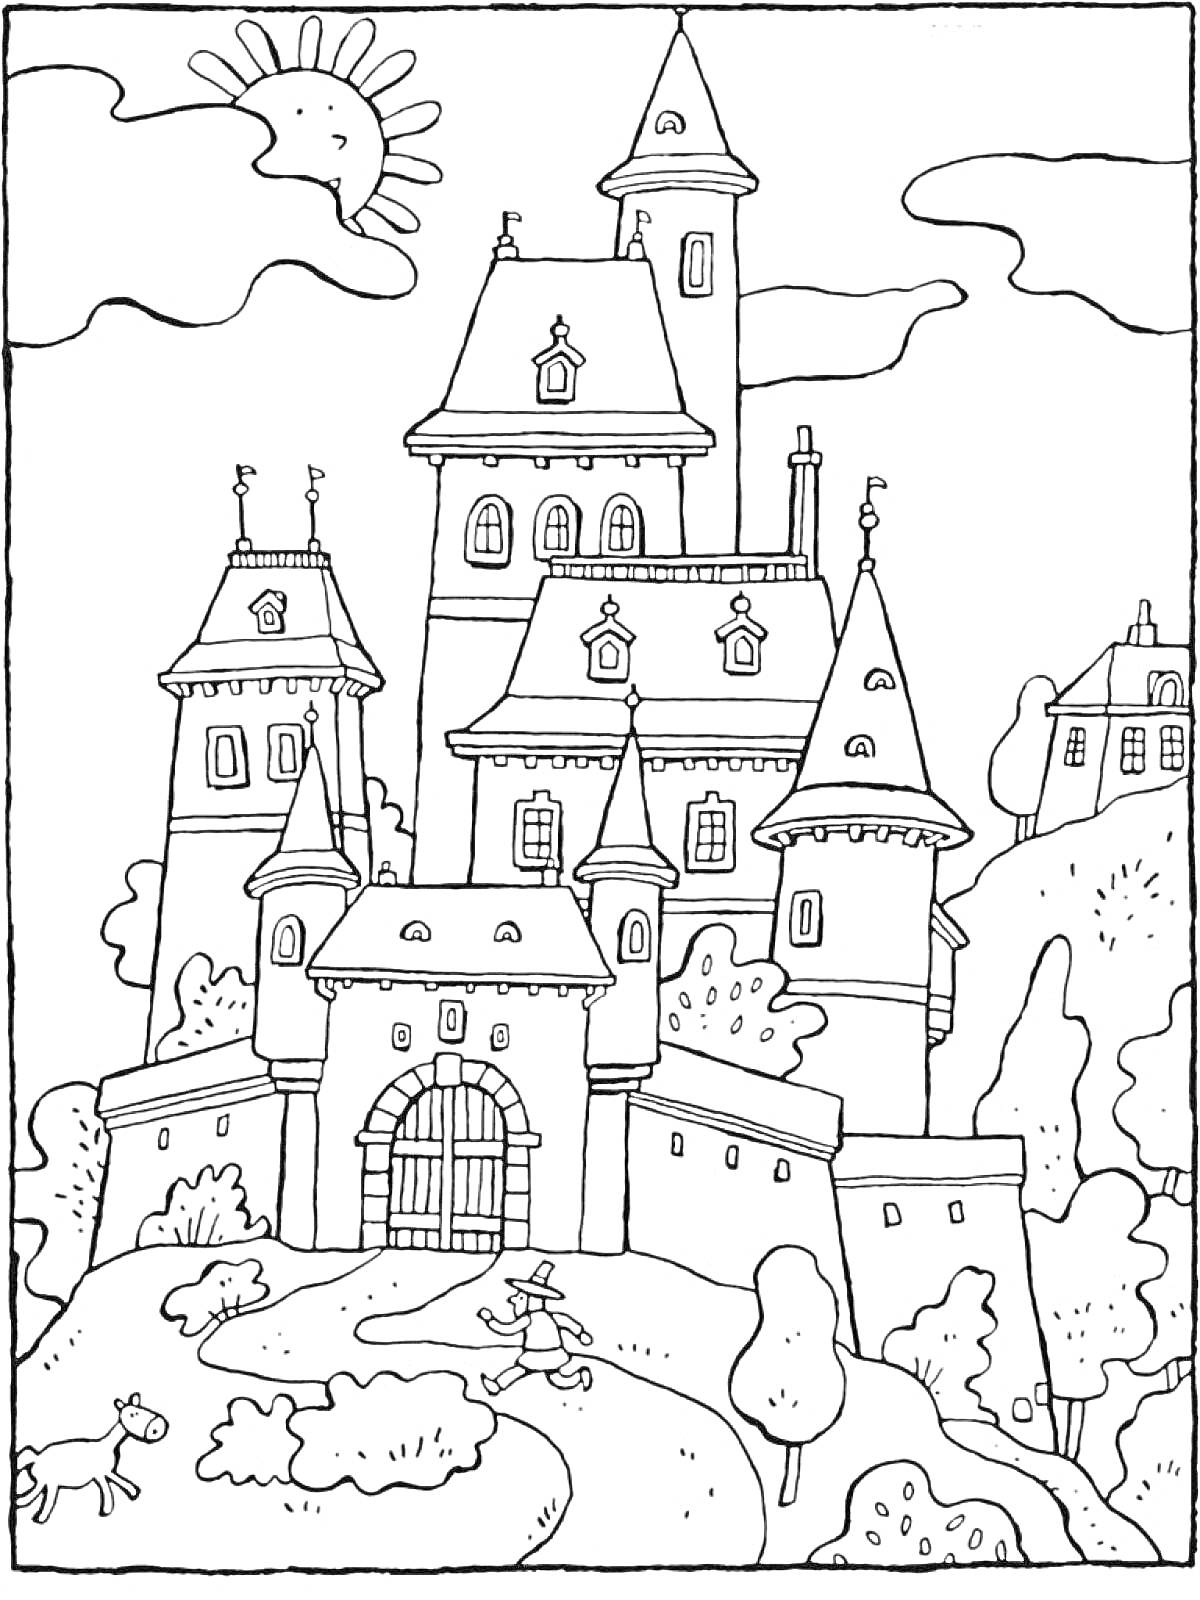 Раскраска Замок с башнями и воротами в окружении природы с солнцем и облаками. Человек с флагом, собака, кусты и деревья.